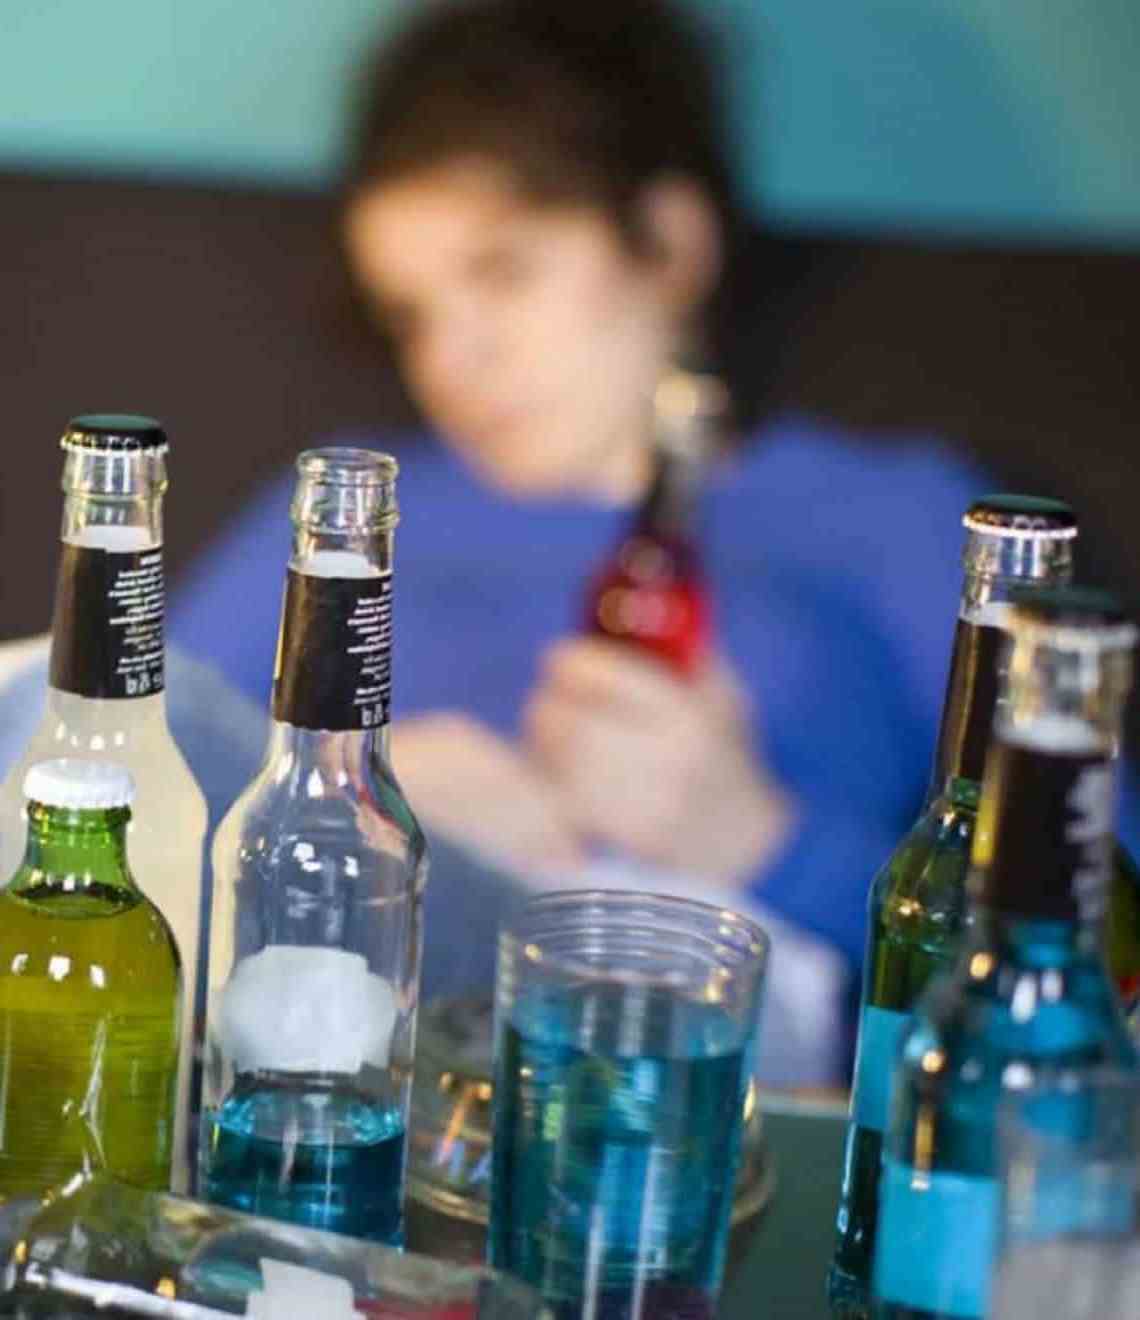 Alcoolismo Em Adolescentes: Consequências, Efeitos Físicos E Psicológicos